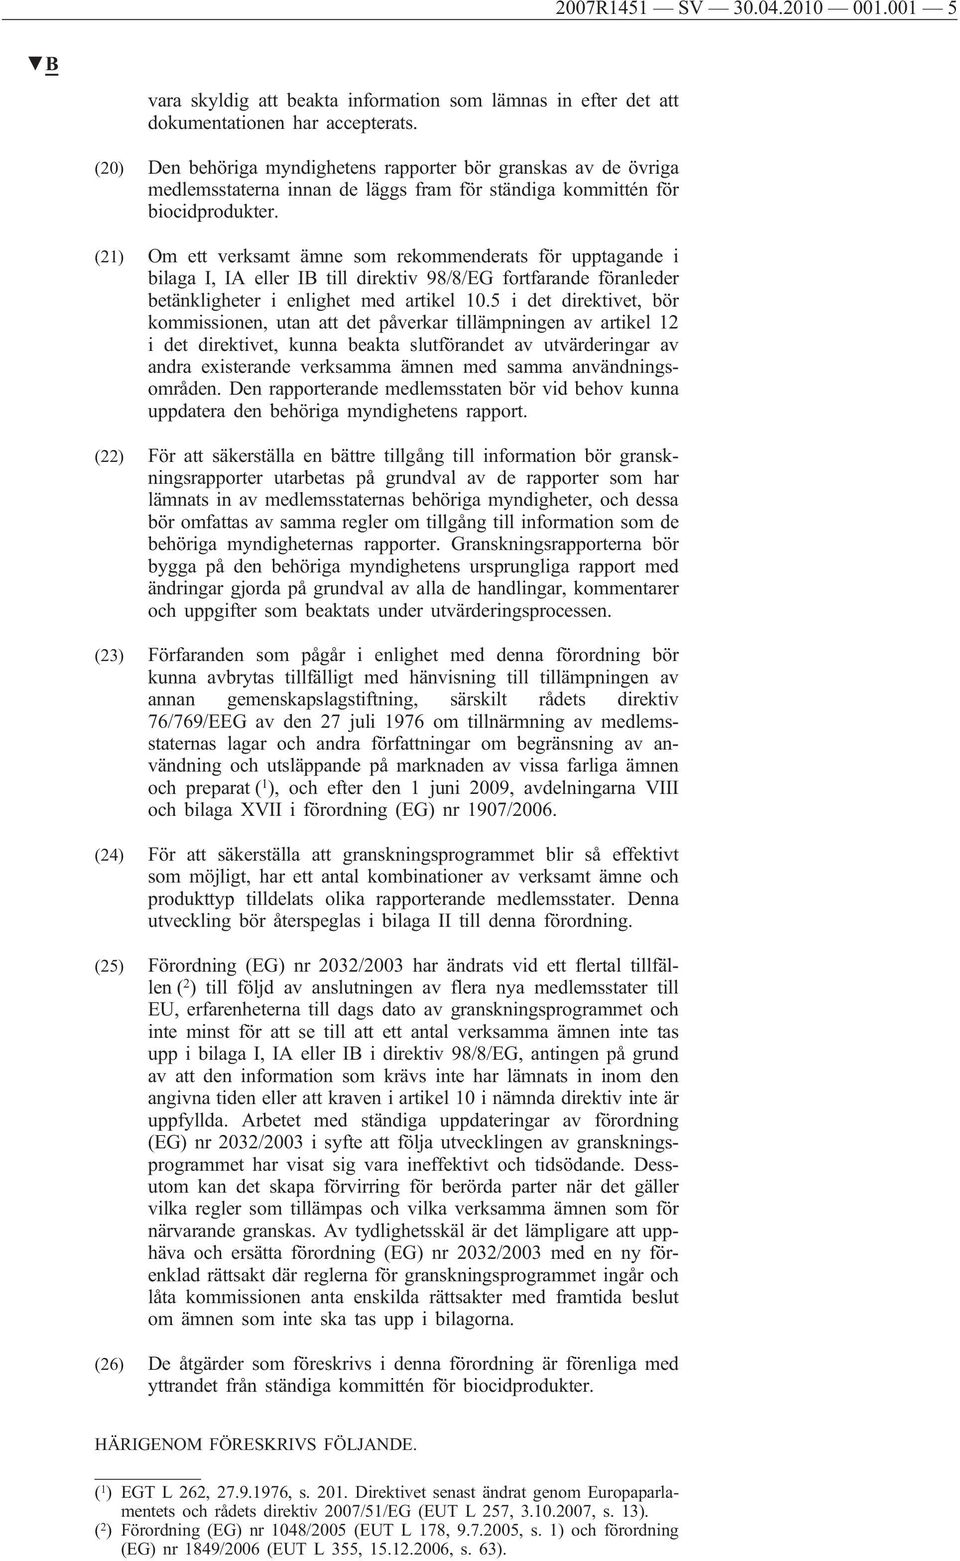 (21) Om ett verksamt ämne som rekommenderats för upptagande i bilaga I, IA eller IB till direktiv 98/8/EG fortfarande föranleder betänkligheter i enlighet med artikel 10.